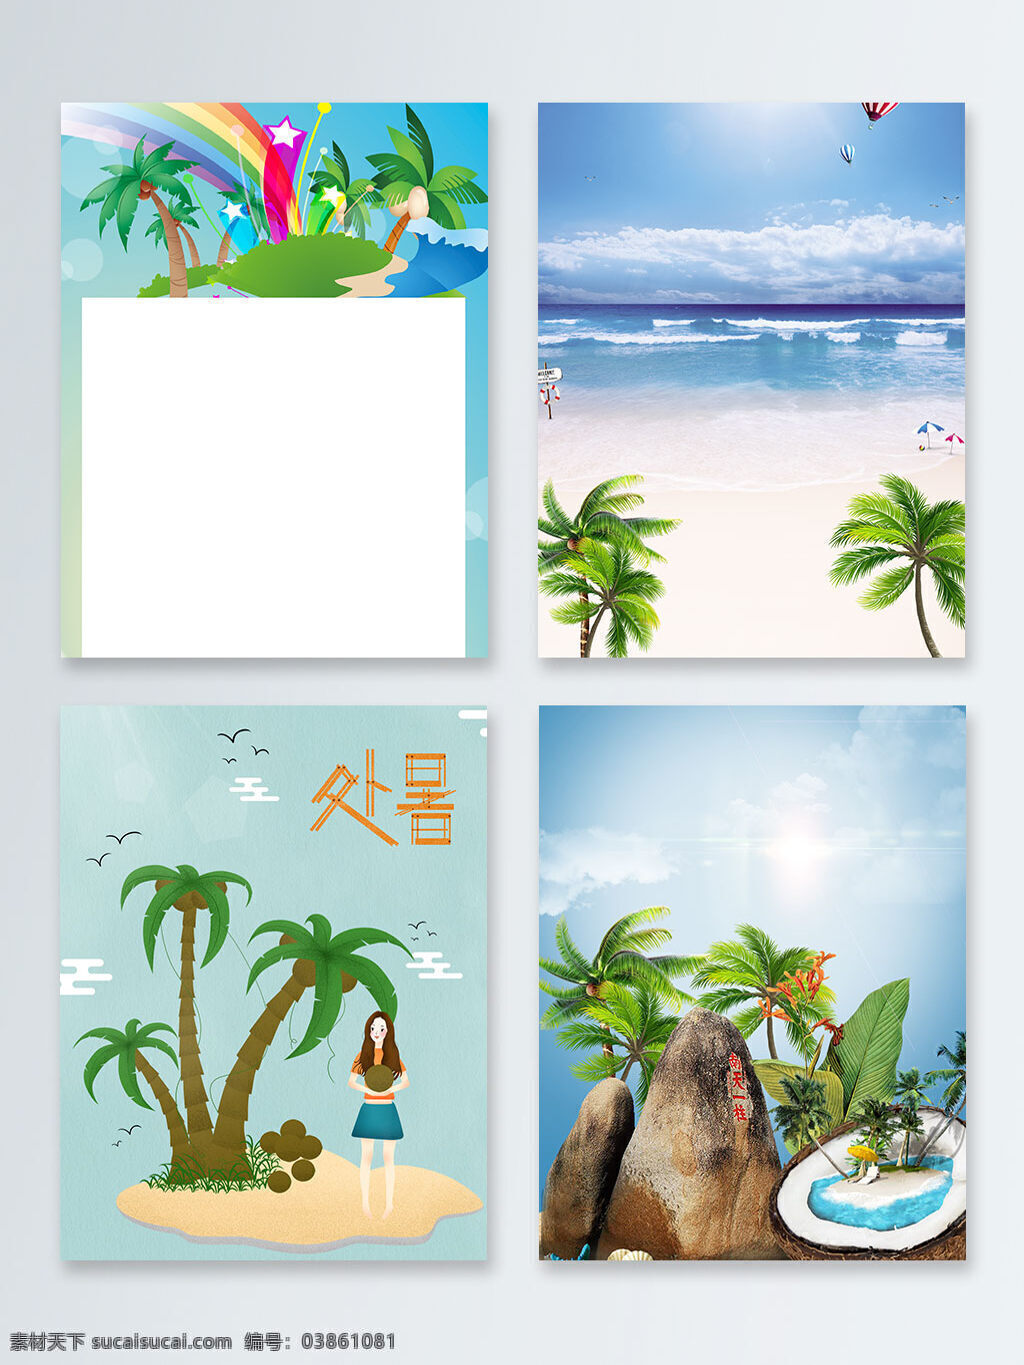 海南 沙滩 天涯海角 椰子树 广告 背景 卡通 彩虹 石头 广告背景 处暑 芭蕉 浪漫三亚 休闲旅游 海南印象